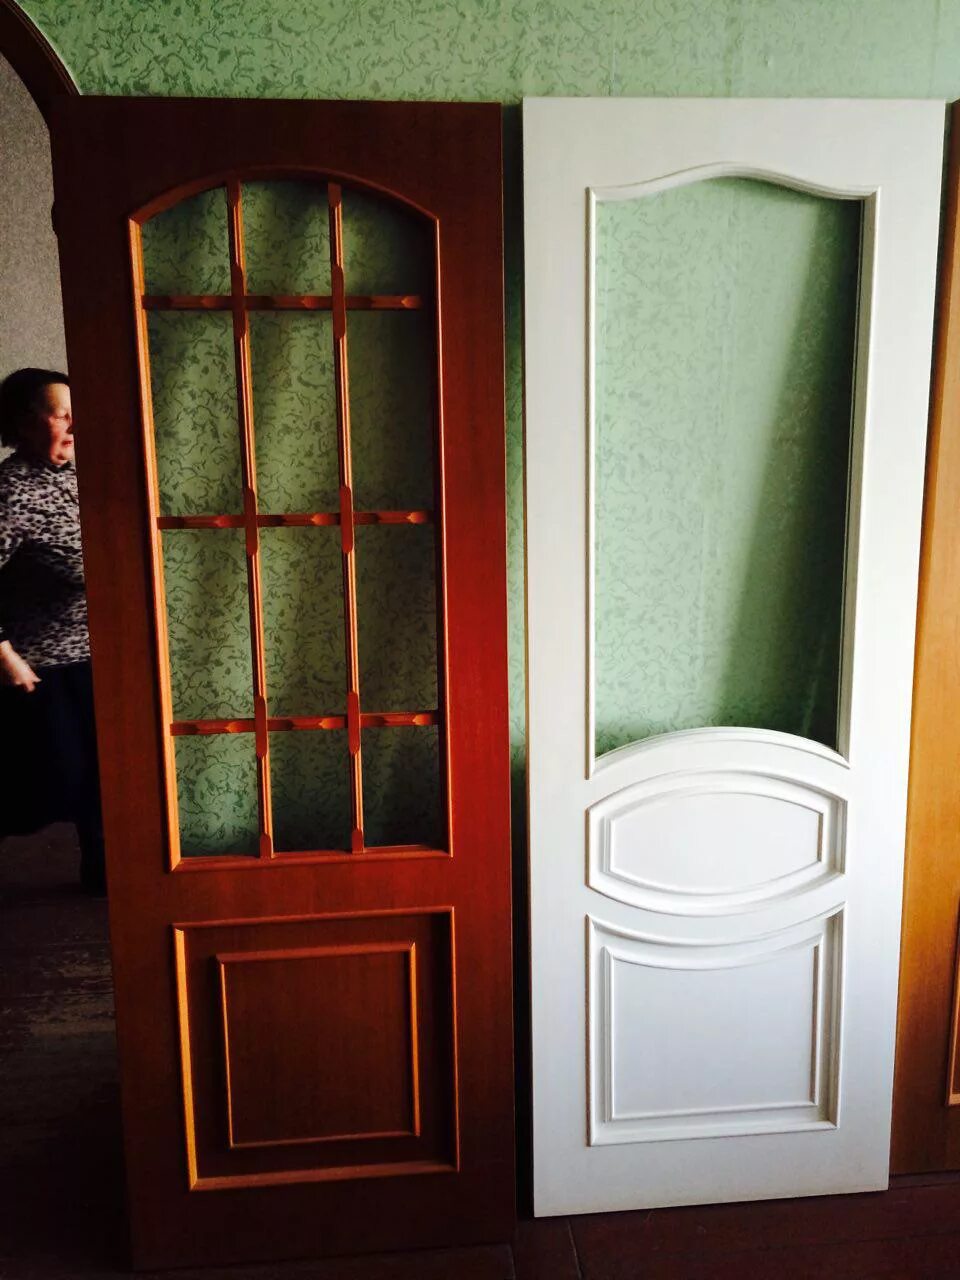 Можно перекрасить межкомнатную дверь. Покраска деревянных дверей. Перекраска деревянных дверей со стеклом. Перекрас дверей межкомнатных. Покраска дверей межкомнатных.